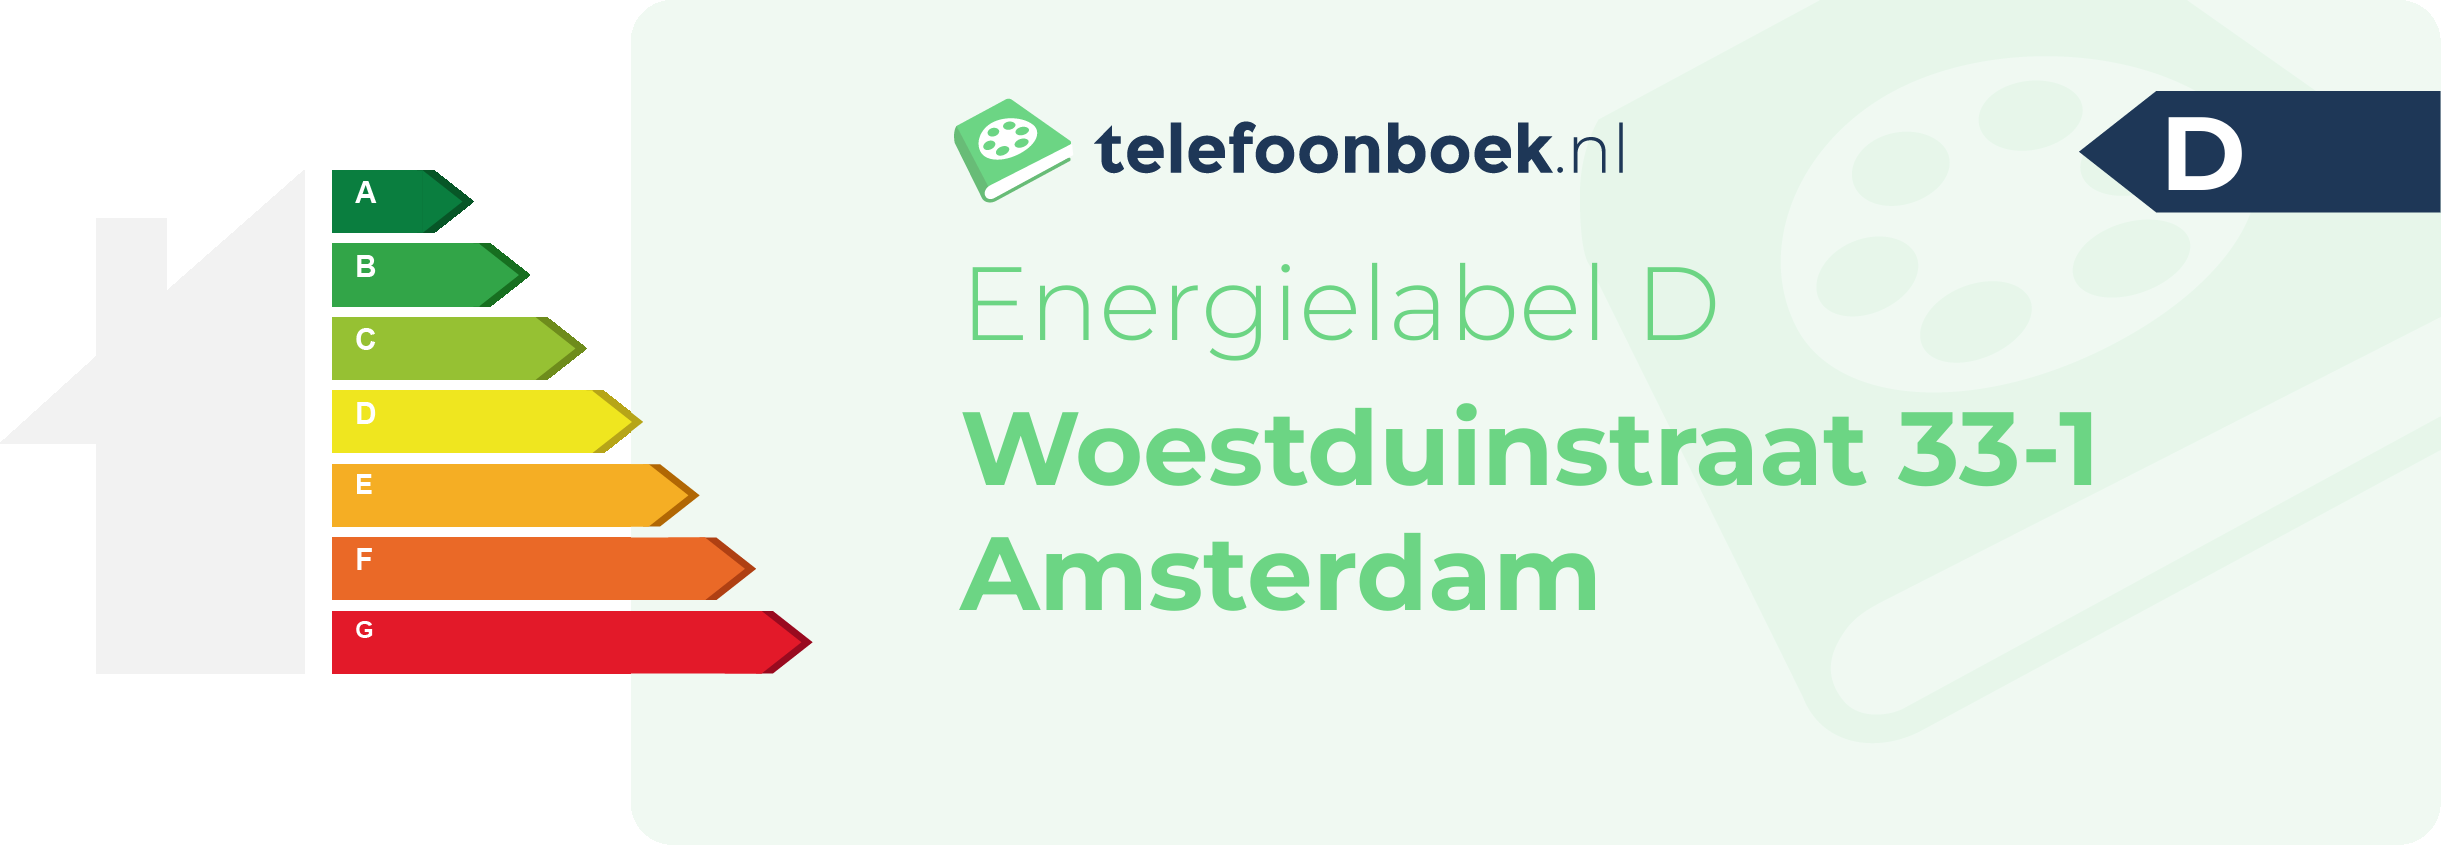 Energielabel Woestduinstraat 33-1 Amsterdam